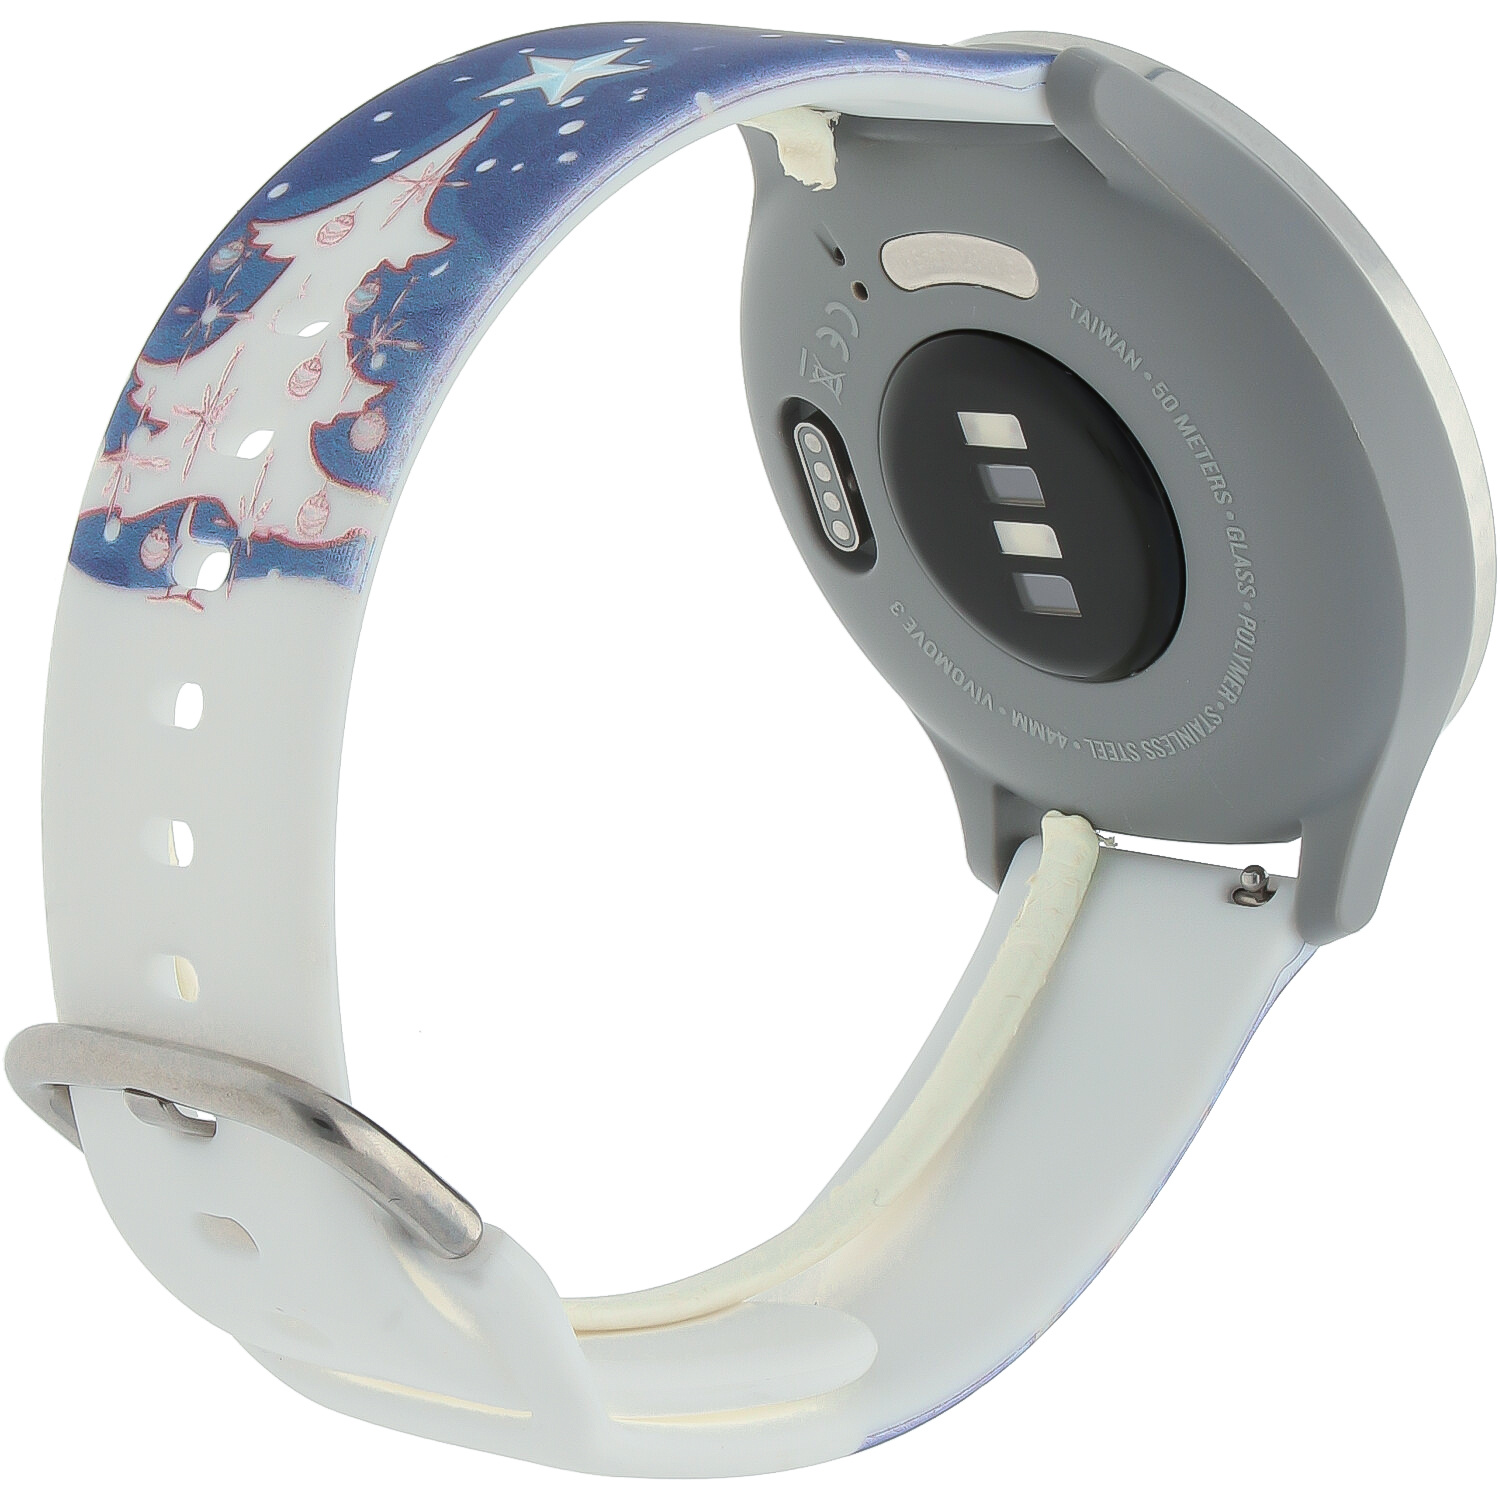 Huawei Watch druck Sportarmband - Weihnachten Schneemann dunkelblau